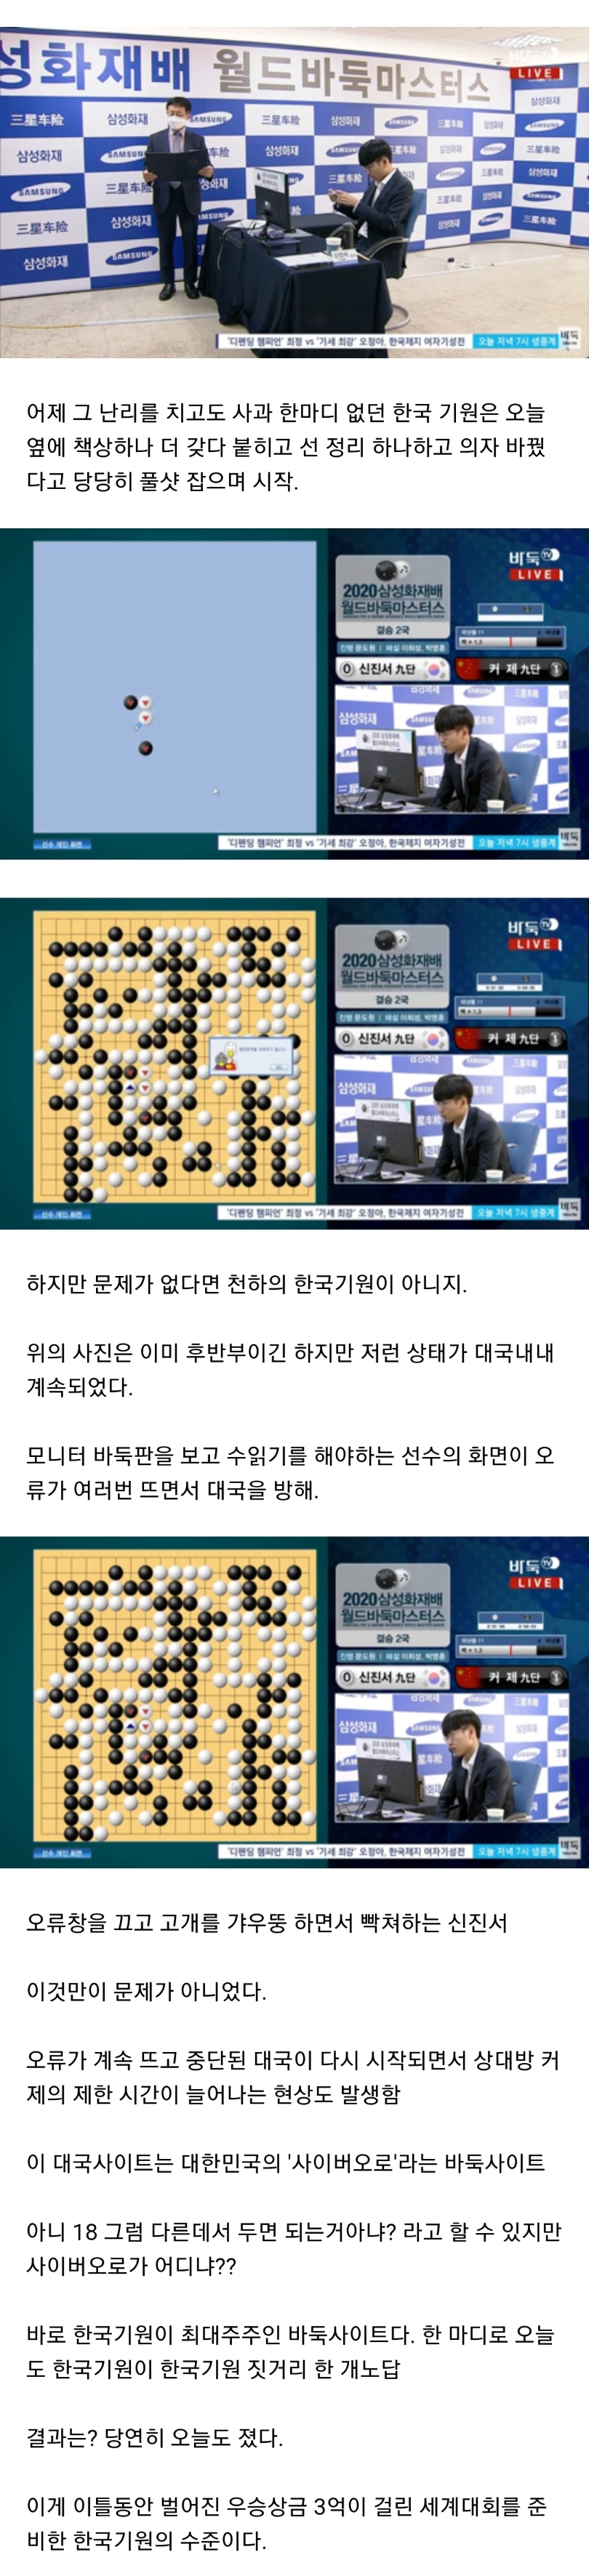 세계적인 바둑의나라 한국의 바둑기원 위엄 .jpg